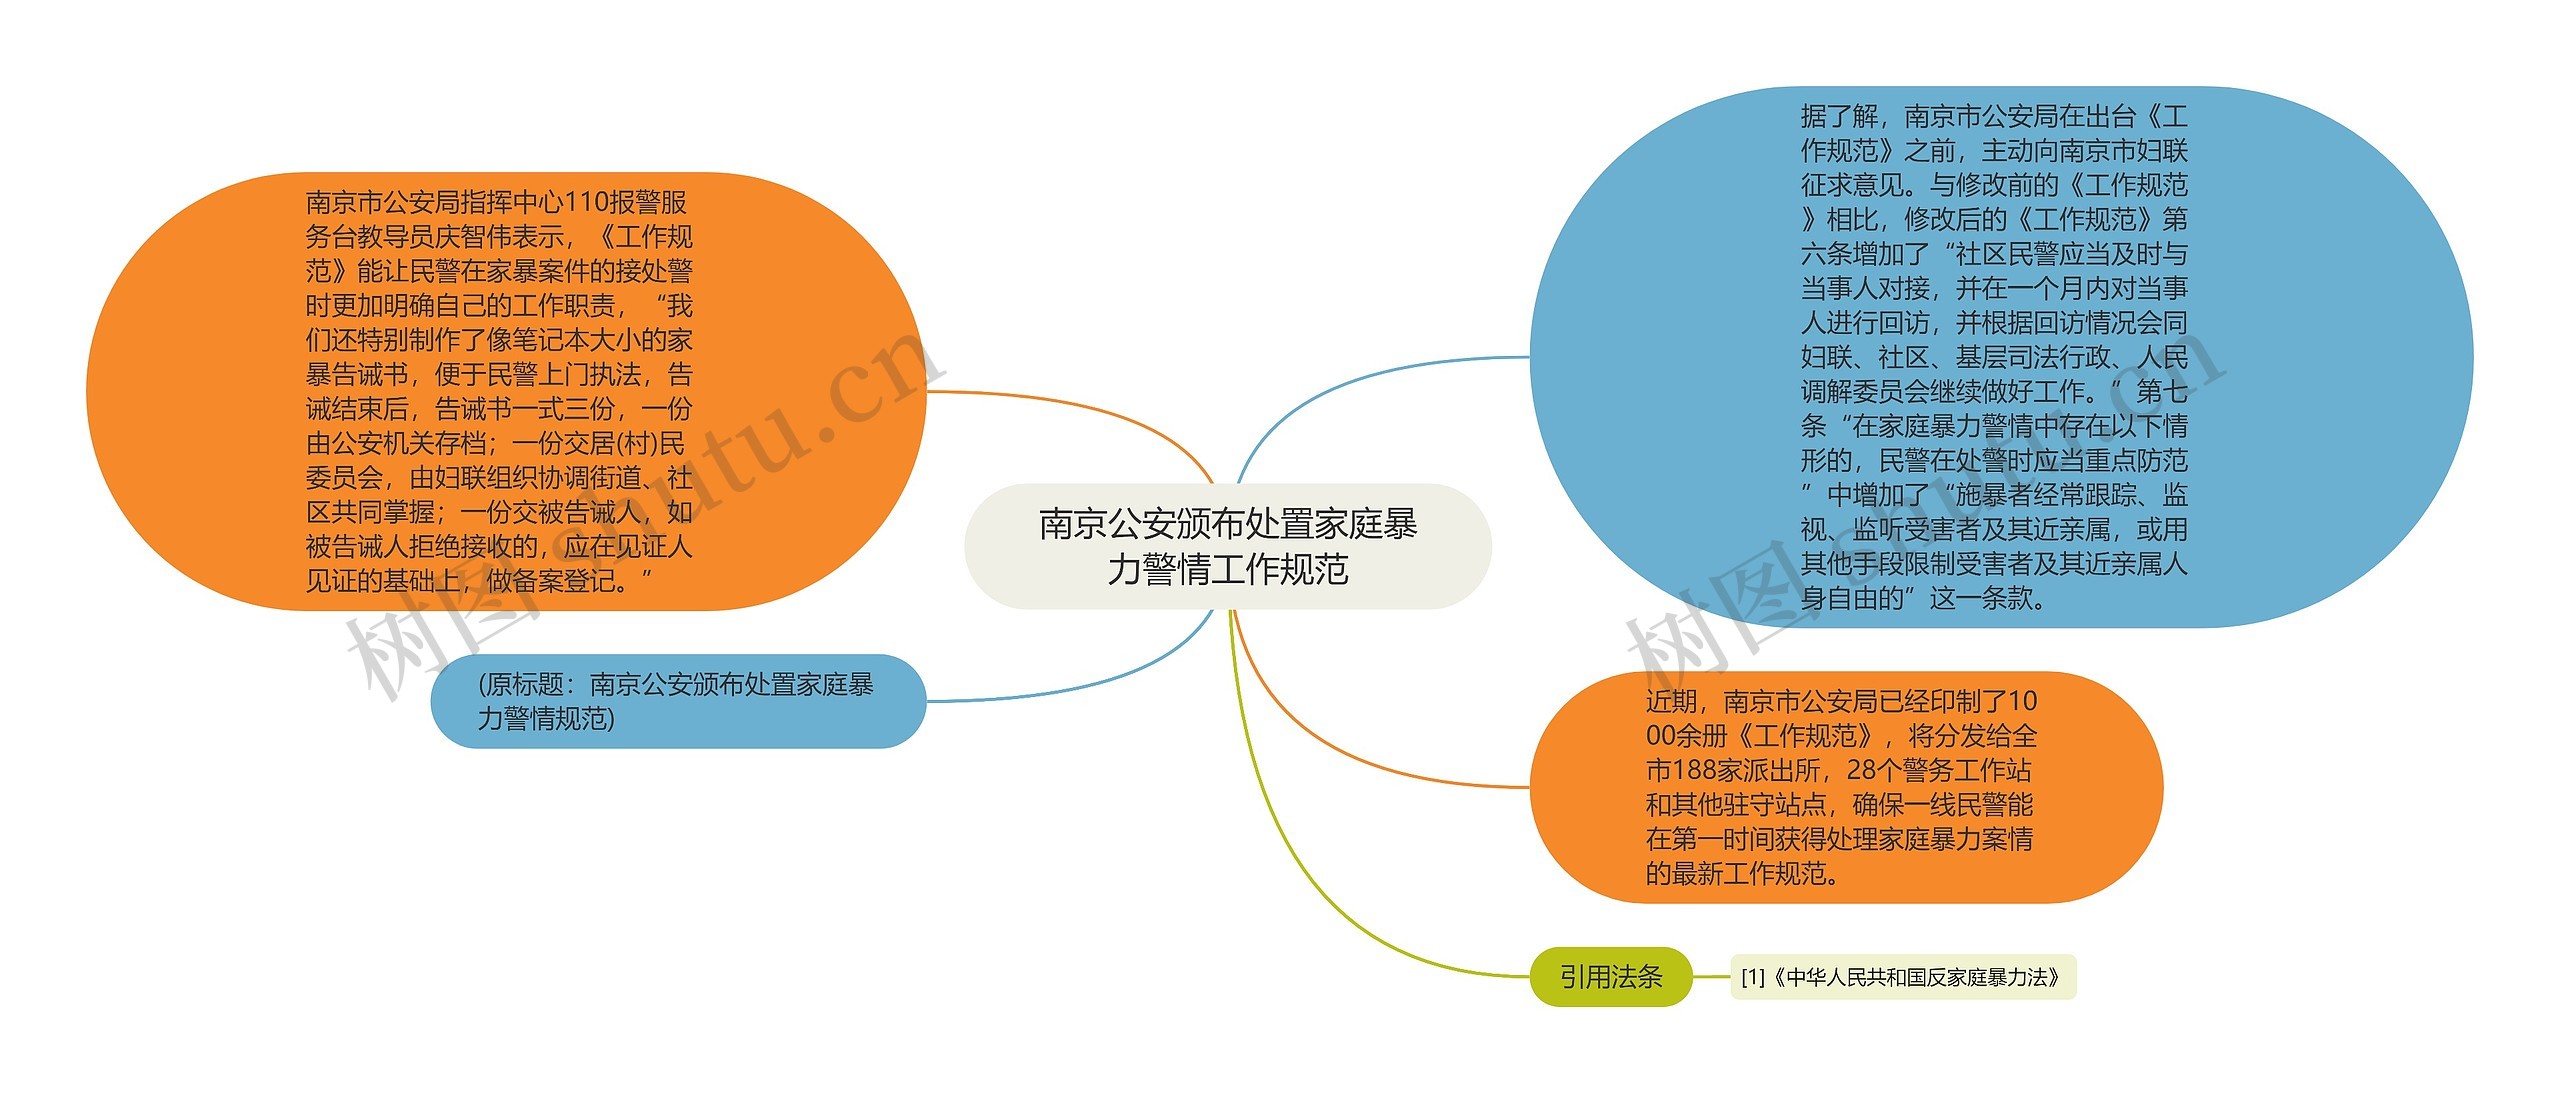 南京公安颁布处置家庭暴力警情工作规范思维导图